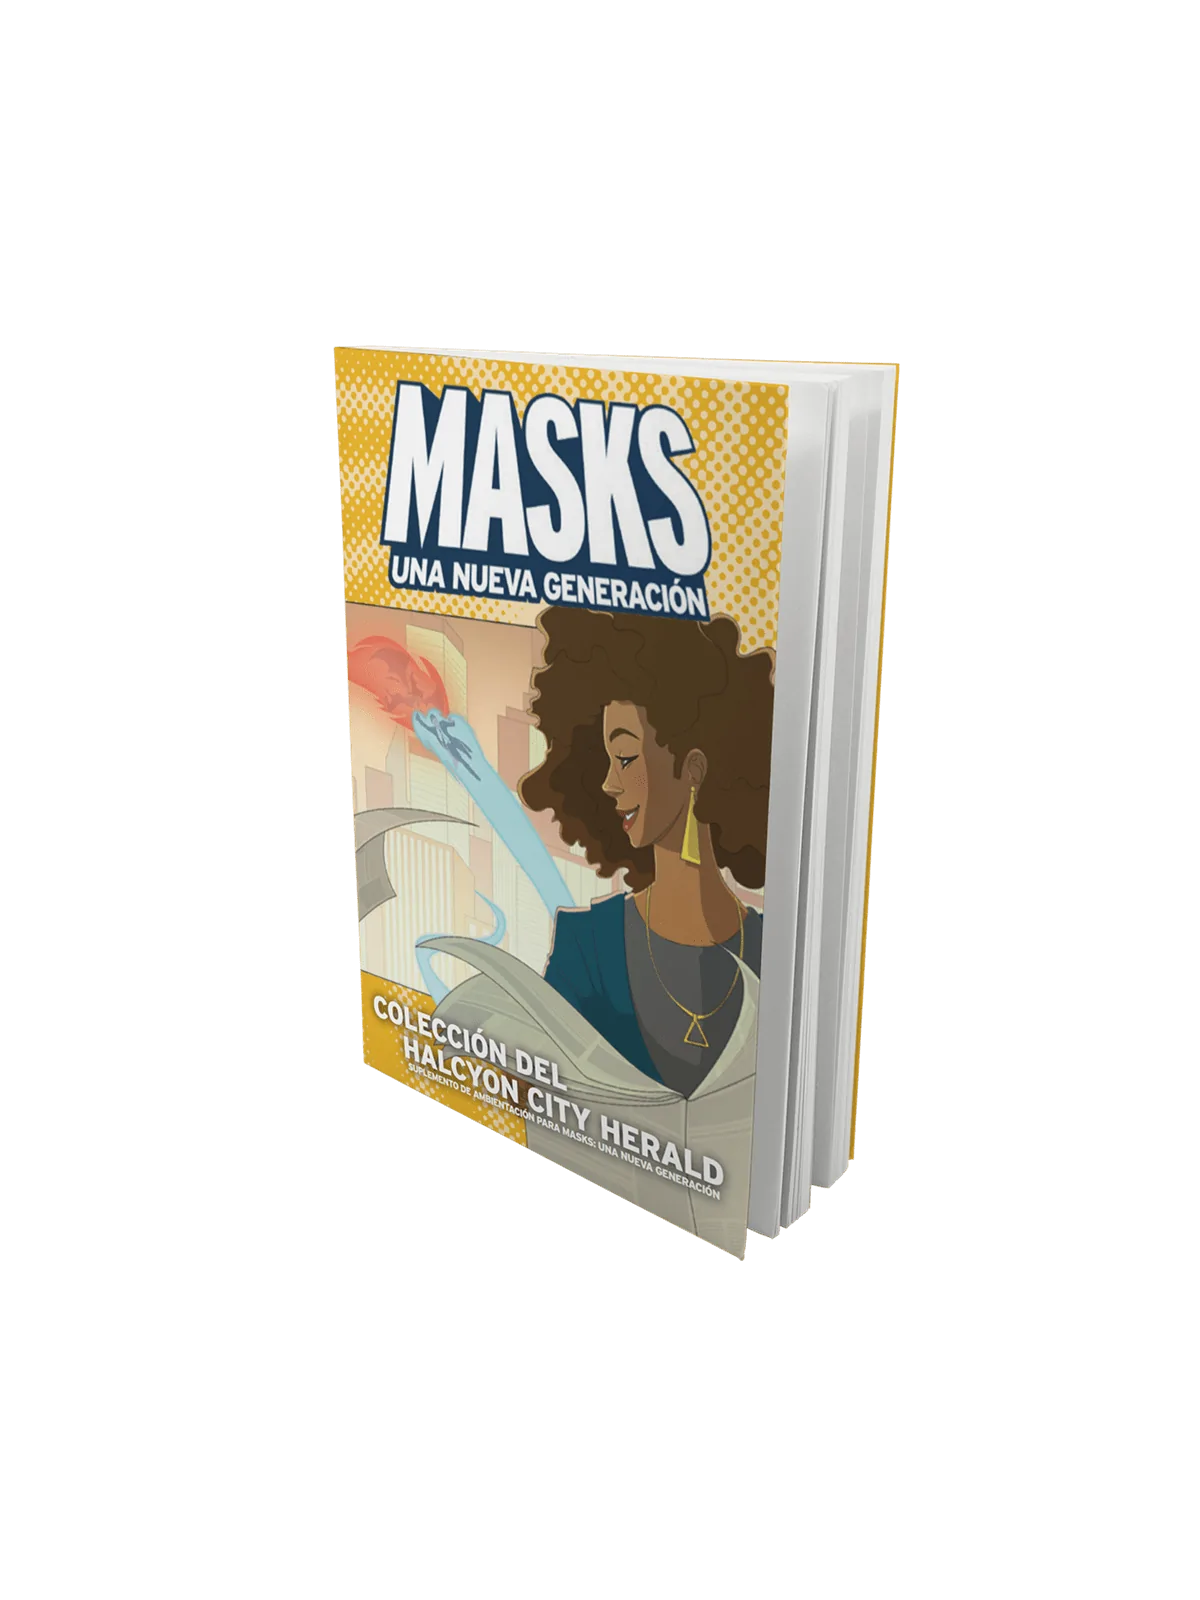 Comprar Masks: Colección del Halcyon City Herald barato al mejor preci